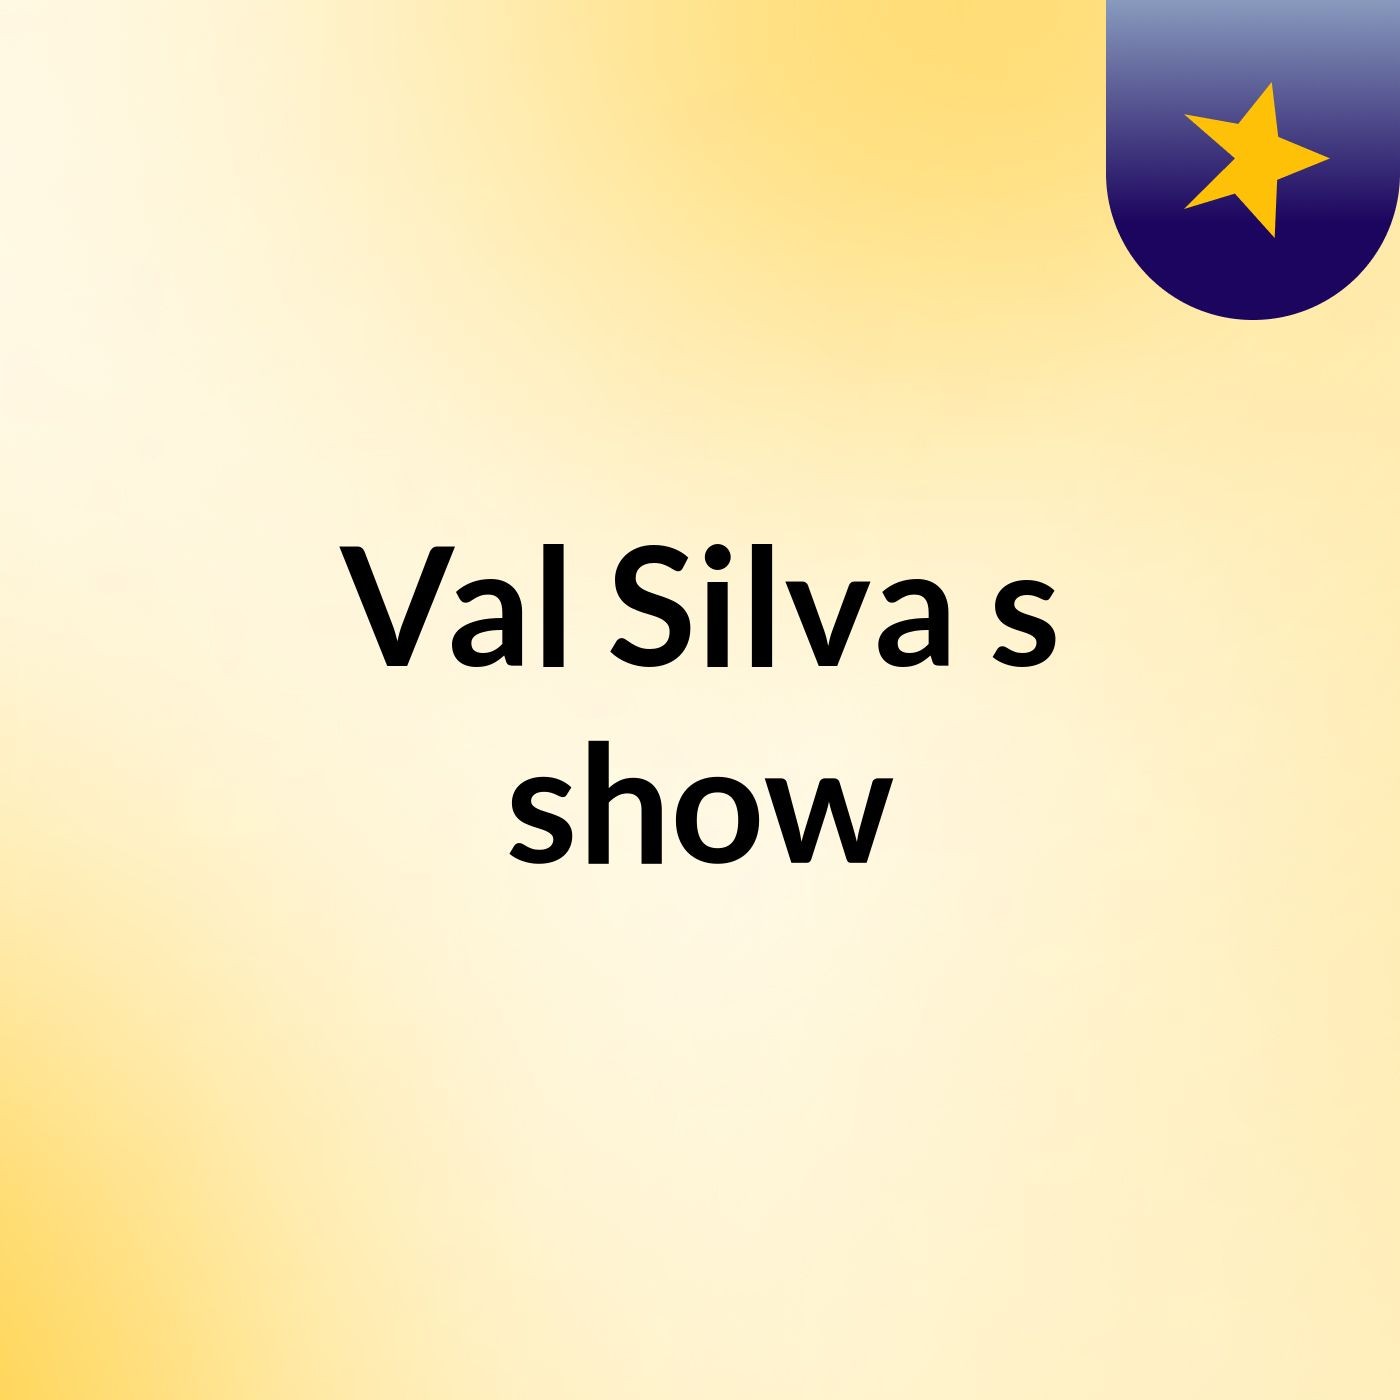 Val Silva's show